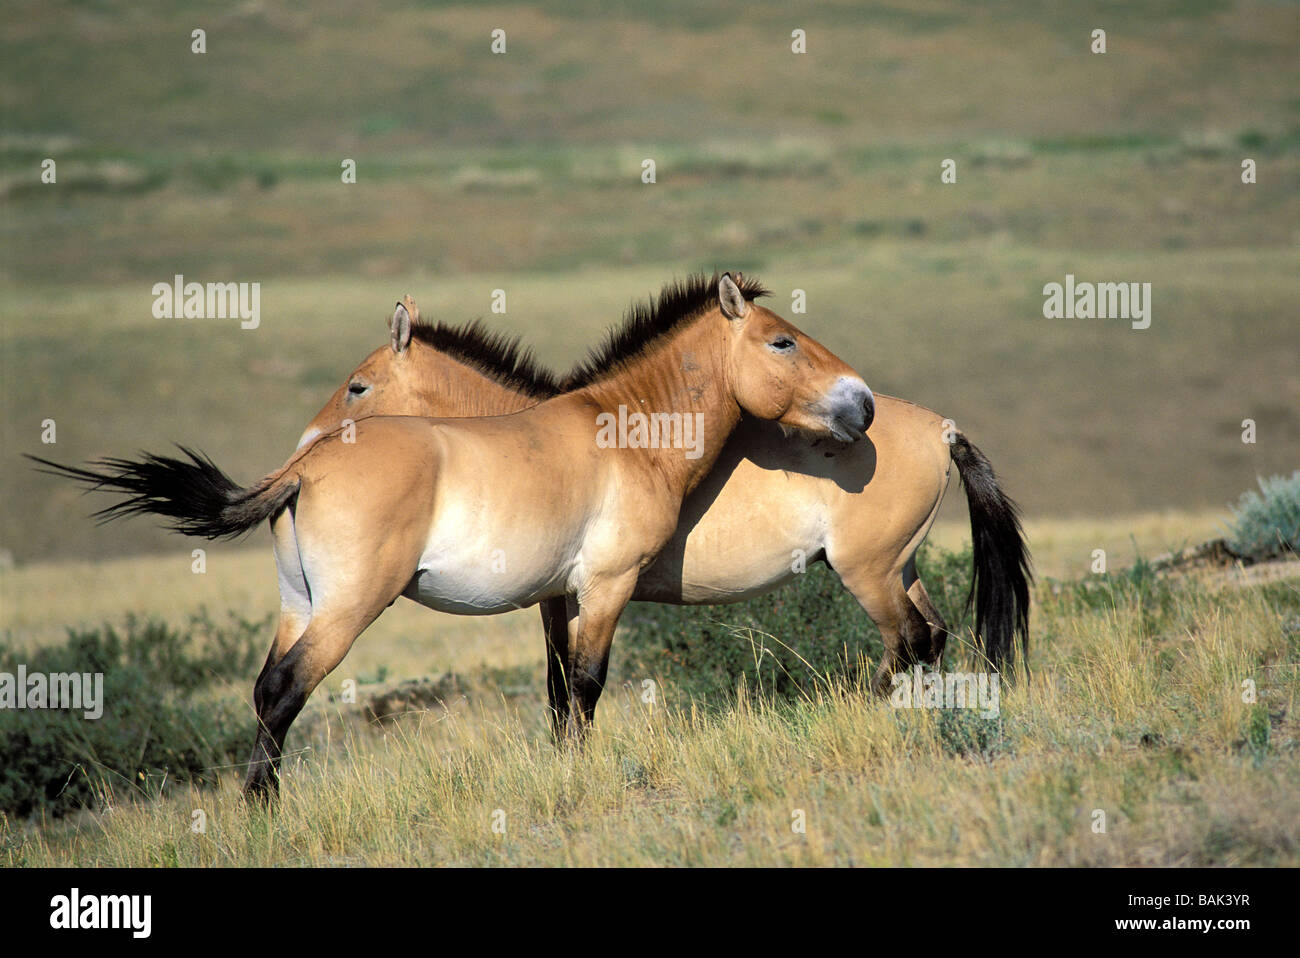 Mongolia, Khustai National Park, wild horses or Takhi Przewalski horses Stock Photo